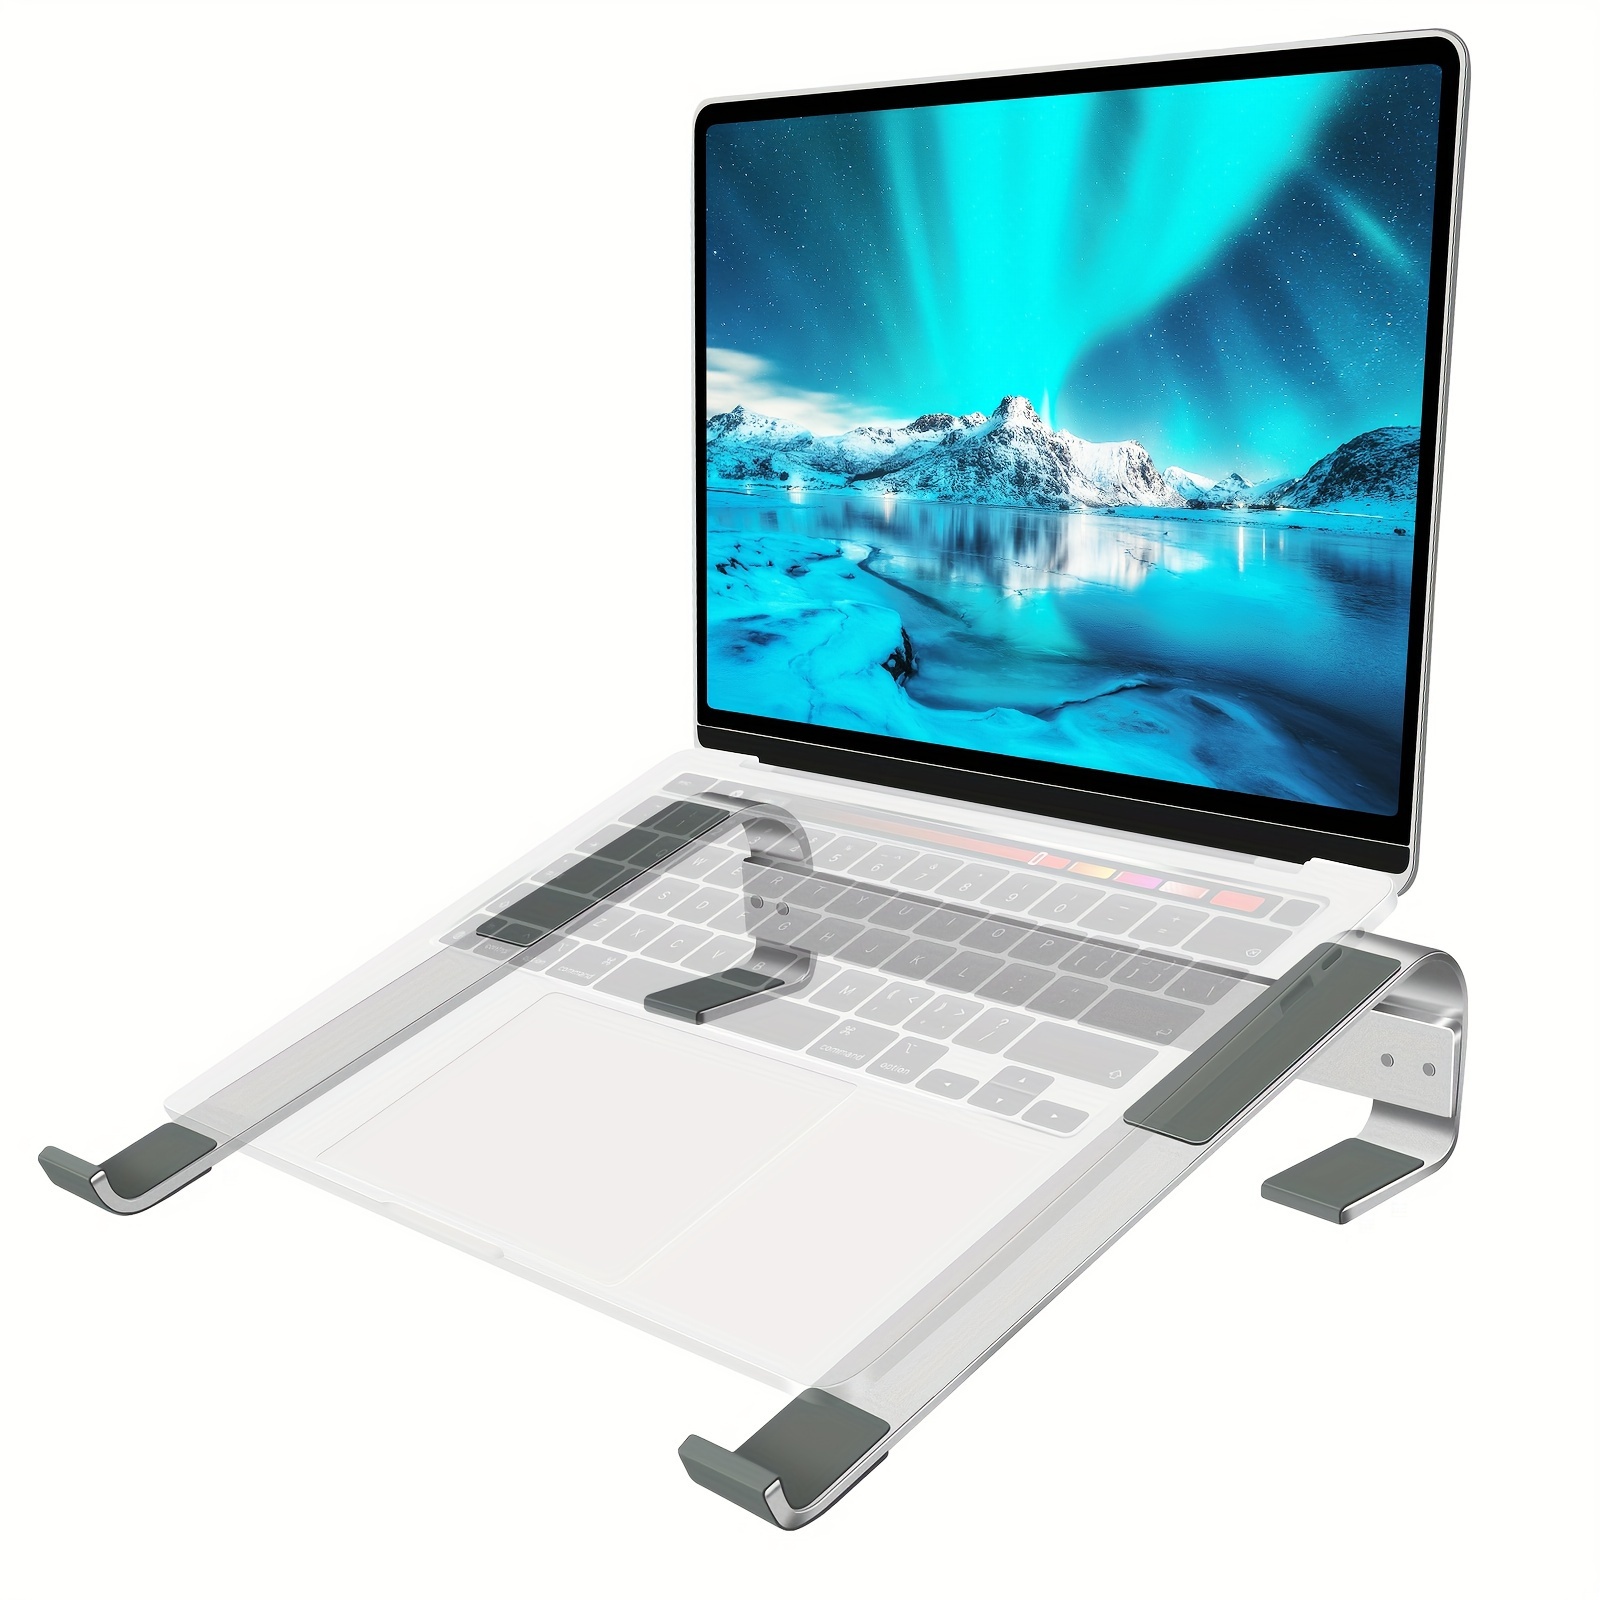  Soporte vertical para computadora de escritorio [ajustable]  Base de aluminio resistente para todas las computadoras portátiles (hasta  20.3 pulgadas) que ahorra espacio, soporte compacto moderno, : Electrónica